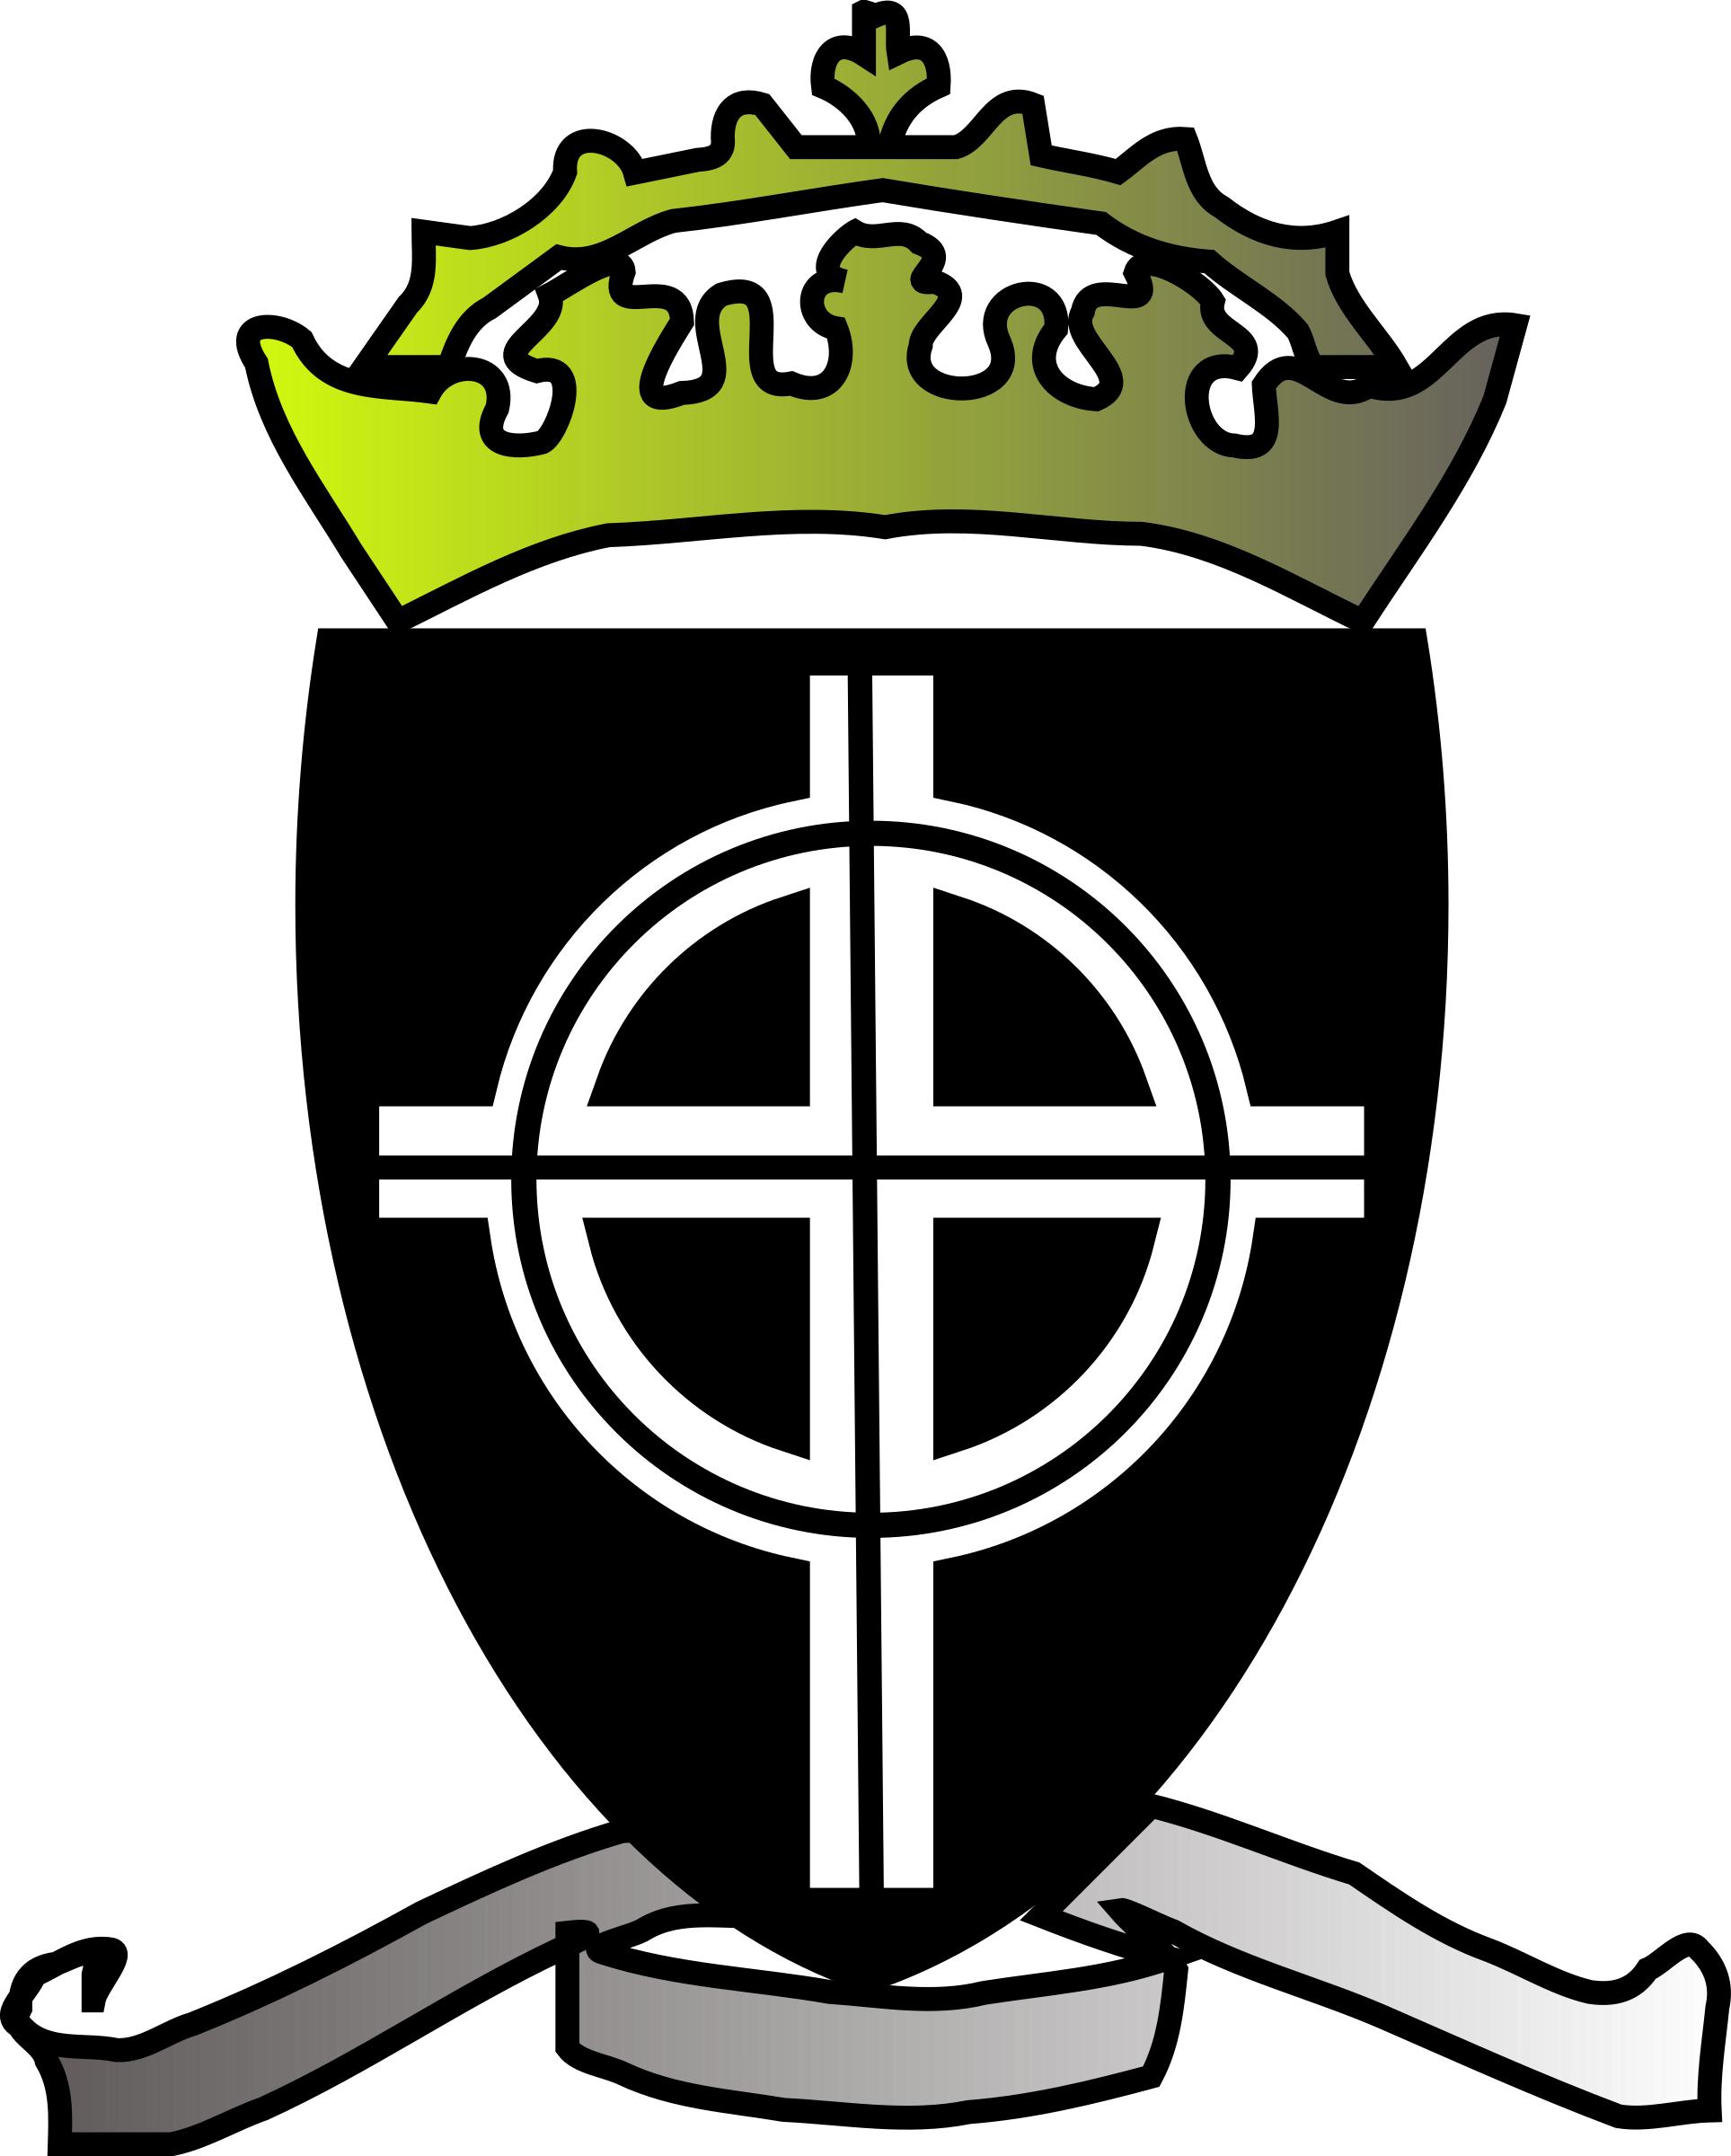 Emblem of Aristasia png